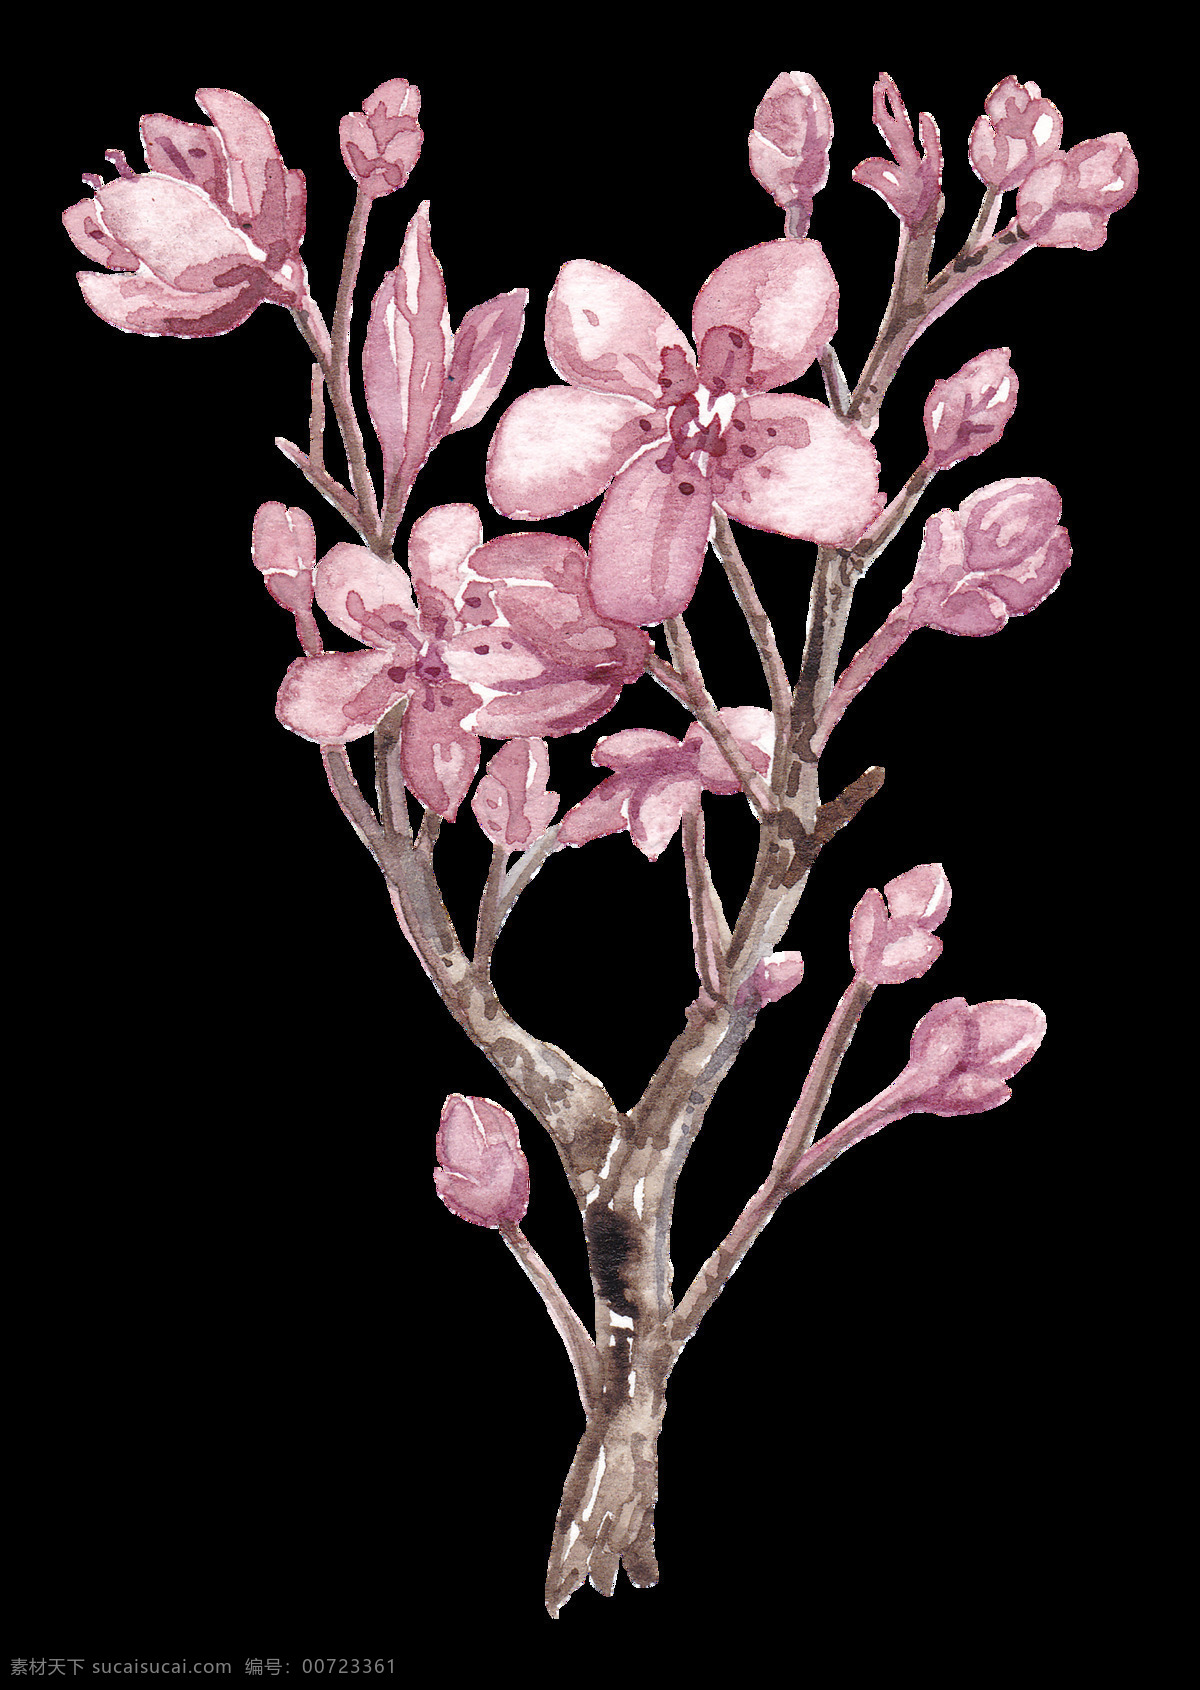 清新 风格 红褐色 树枝 樱花 装饰 元素 粉红色 粉色花瓣 粉色花朵 漂亮樱花 清新风格 装饰元素